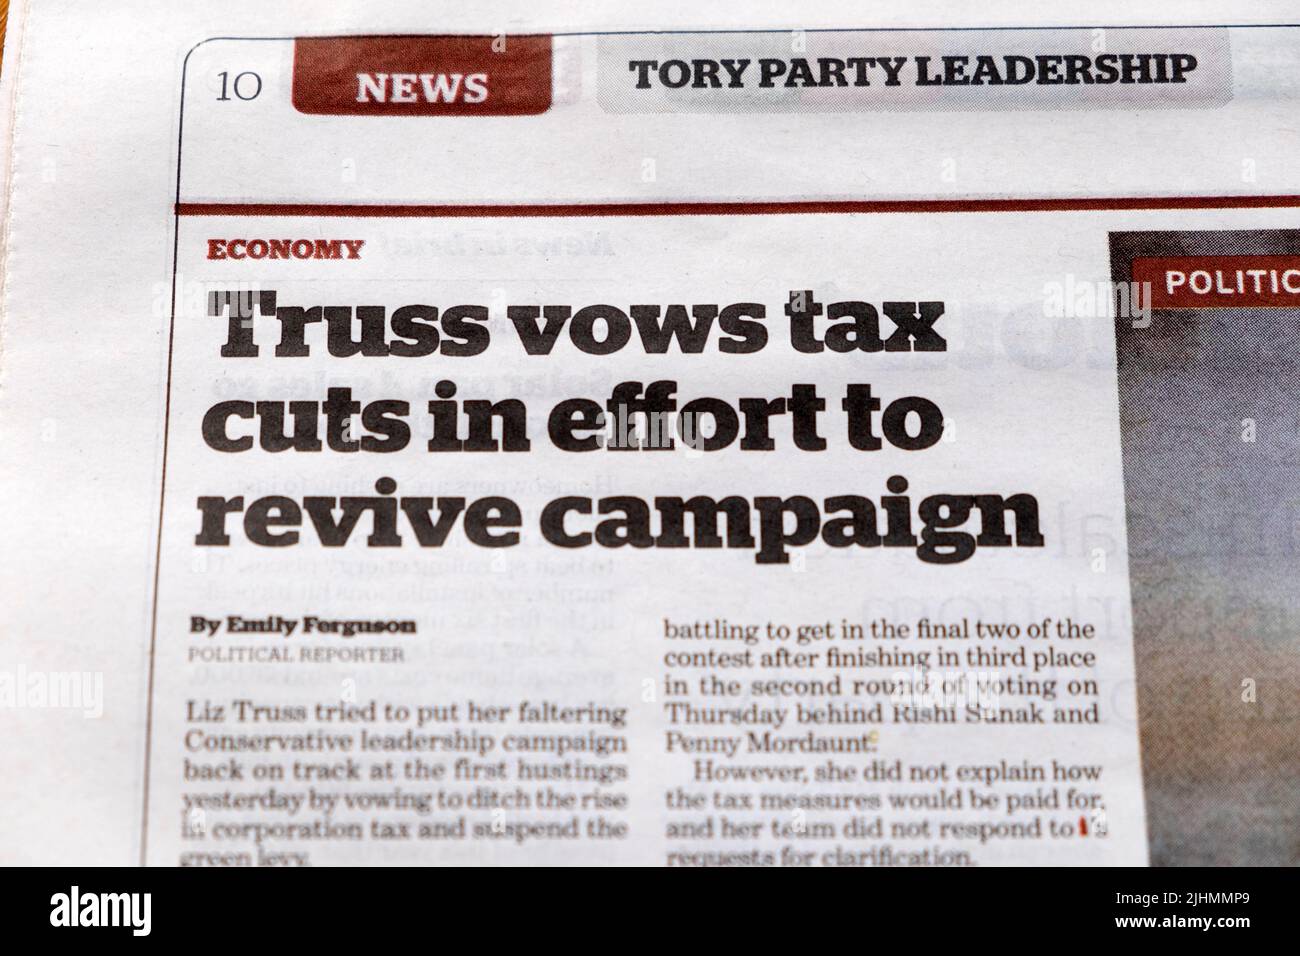 Liz 'votos truss recortes de impuestos en esfuerzo por revivir la campaña' Partido Tory Liderazgo i diario titular recorte 17 julio 2022 Londres Reino Unido Foto de stock